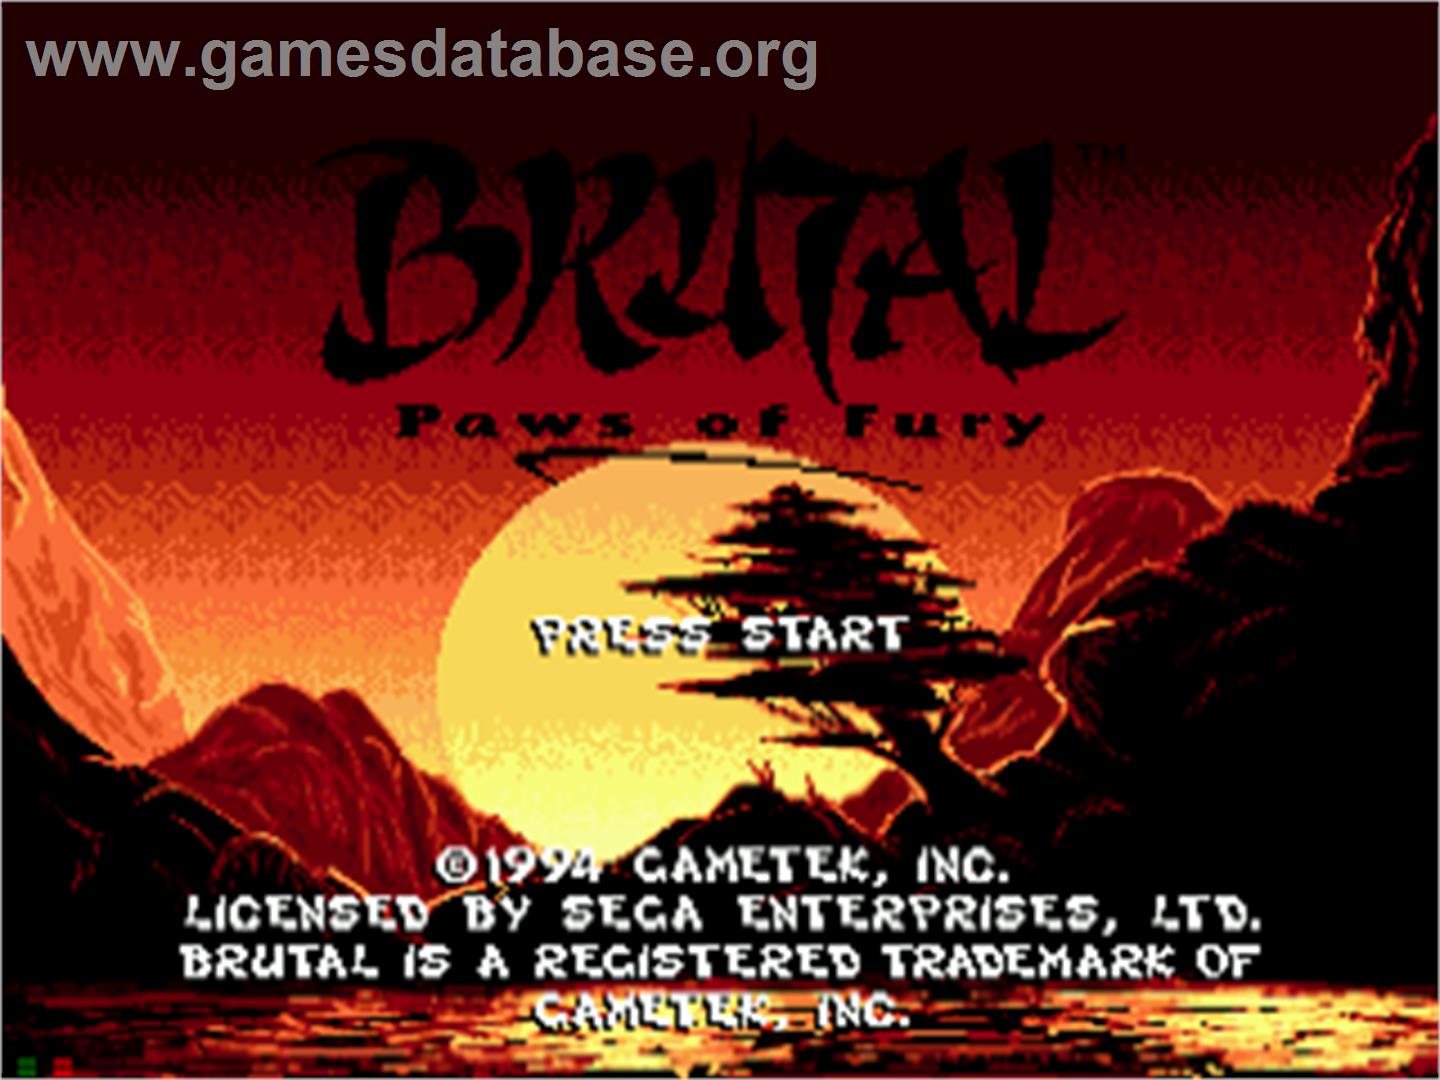 Brutal: Paws of Fury - Sega CD - Artwork - Title Screen